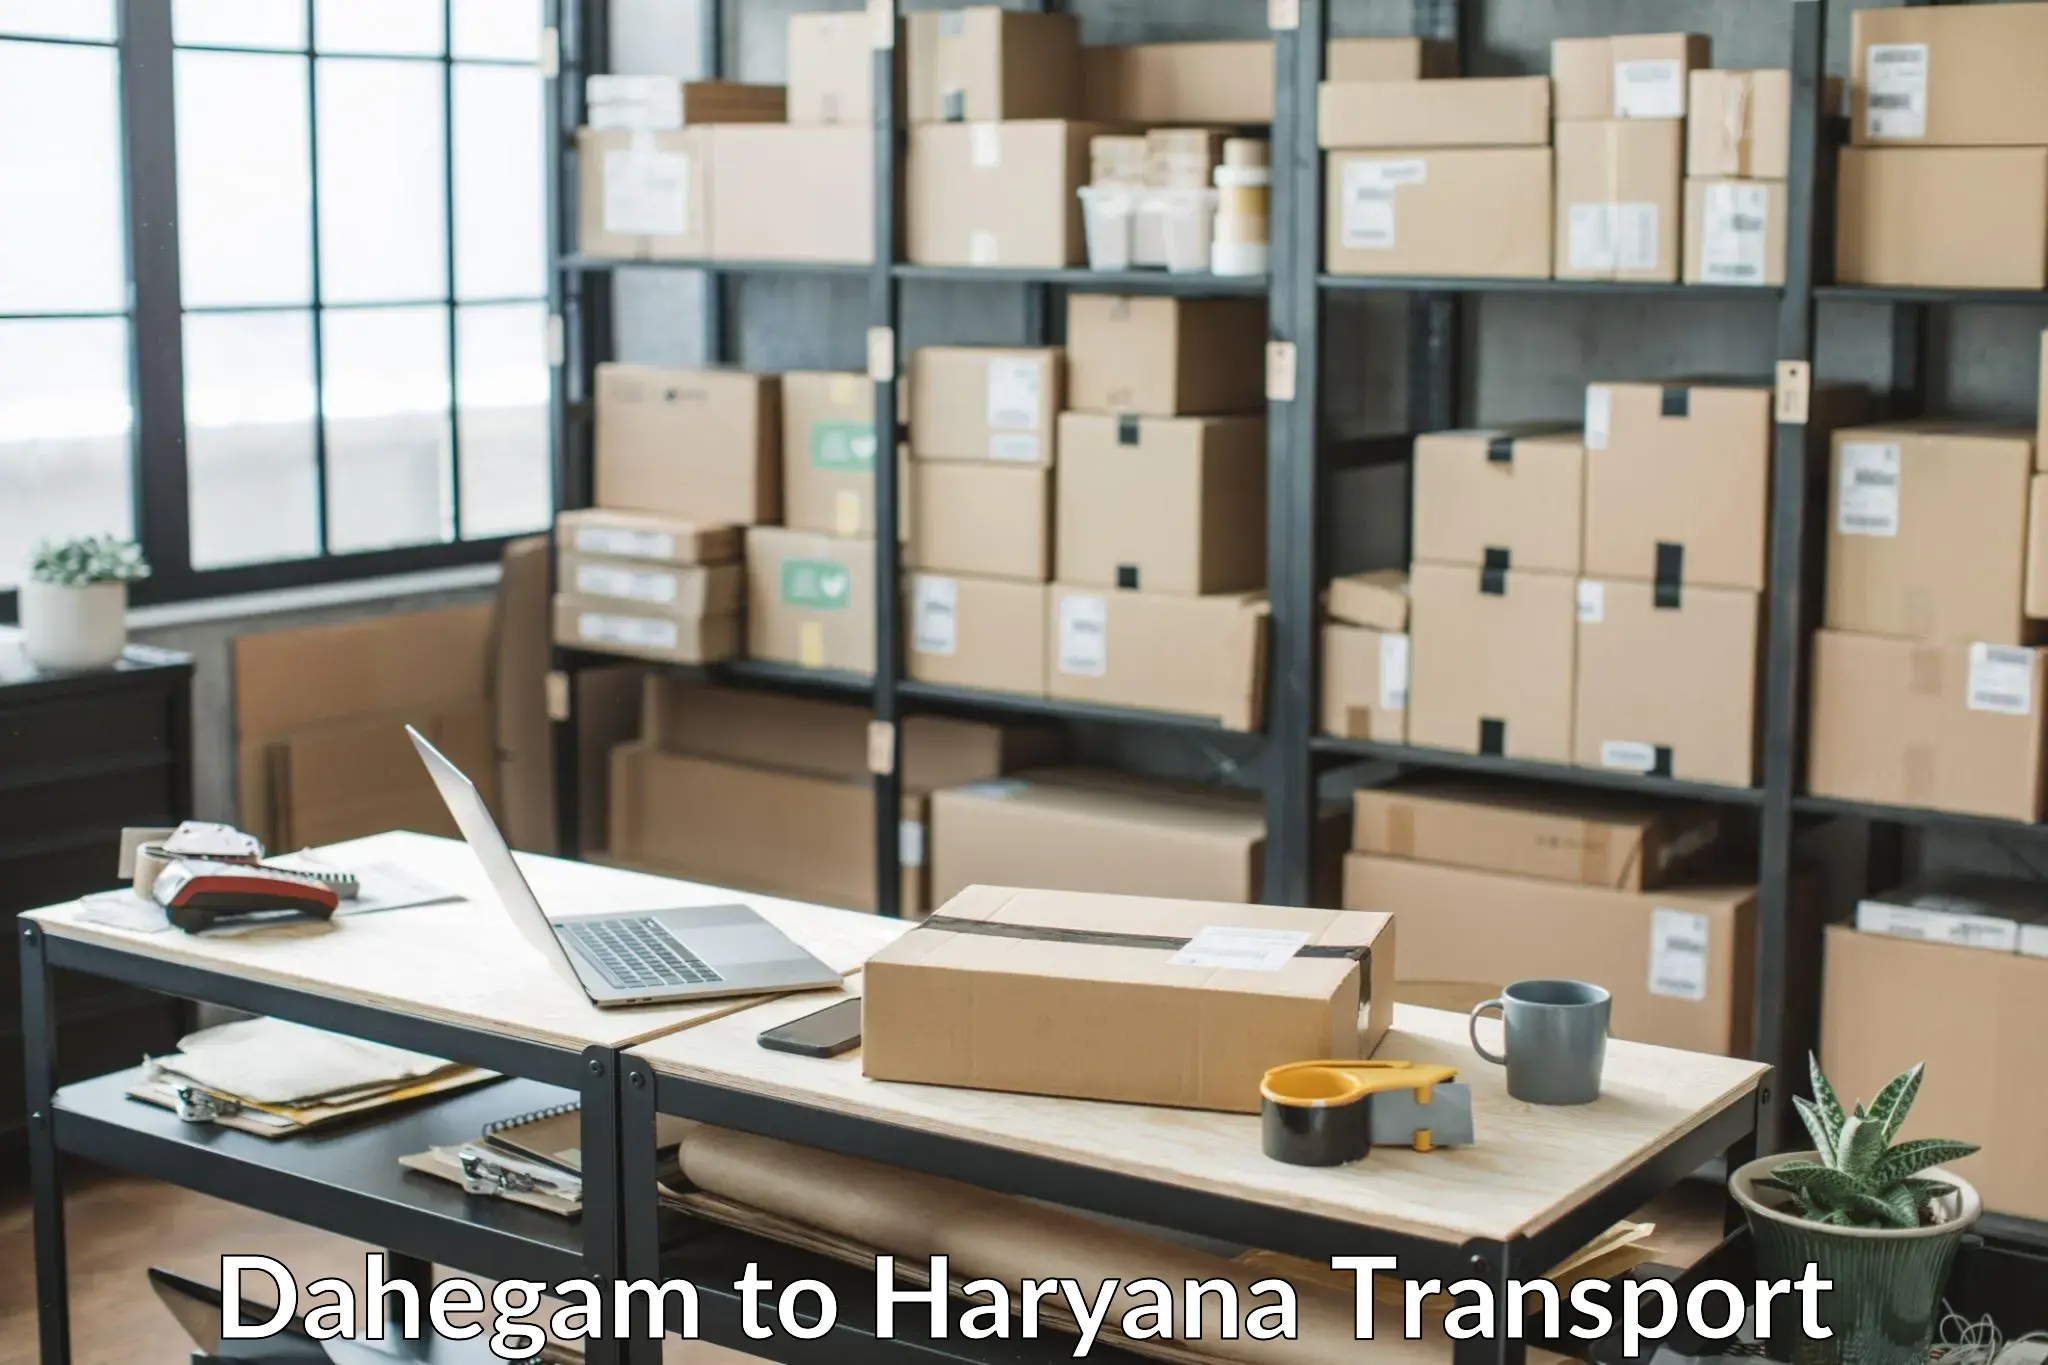 Air cargo transport services Dahegam to Haryana